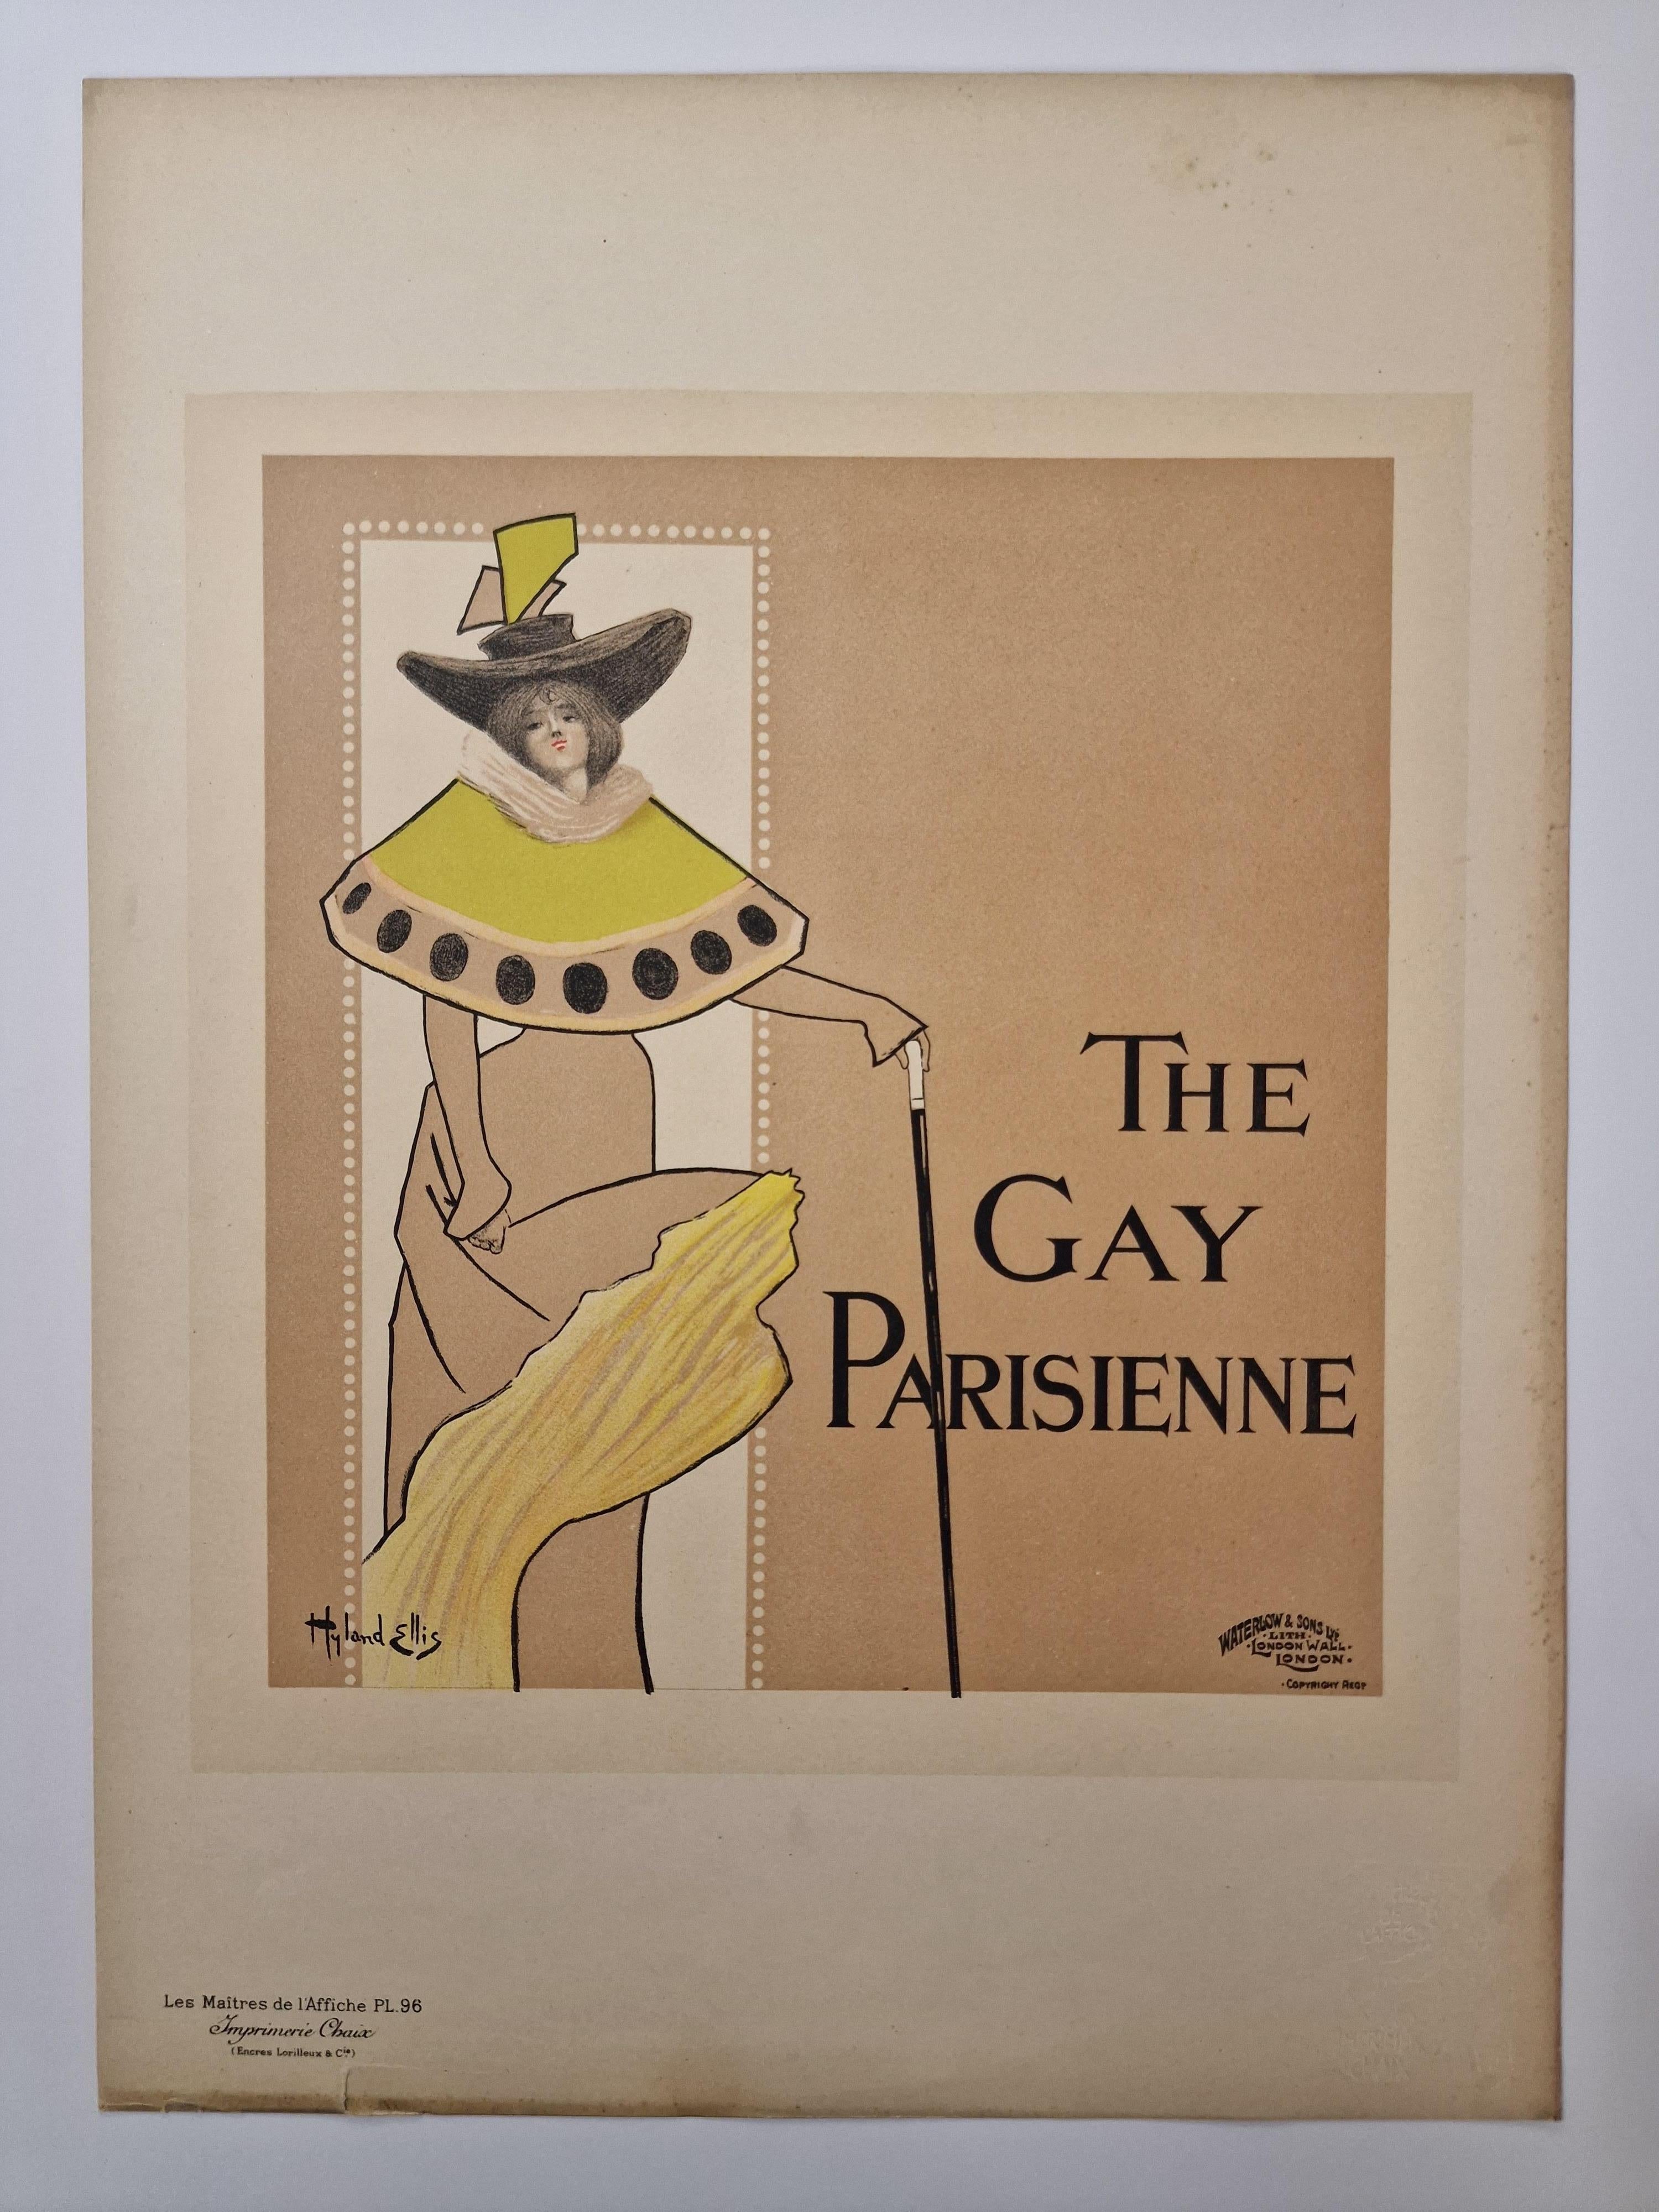 The Gay parisienne - Print by Ellis Hyland